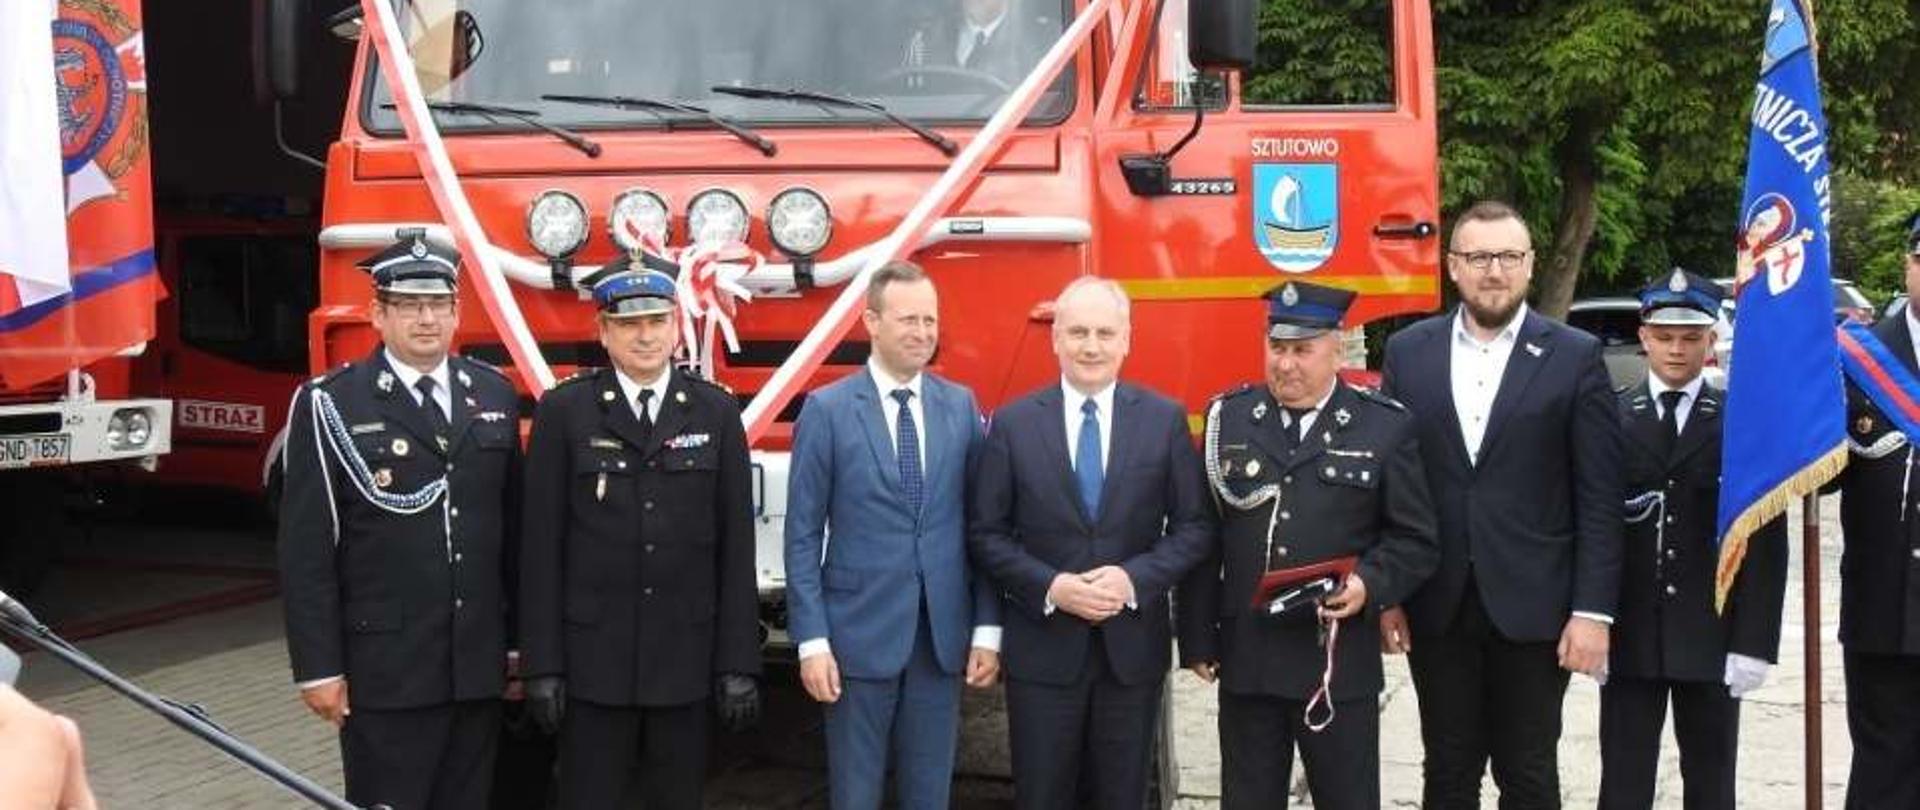 16 lipca 2020 roku na placu przed remizą Ochotniczej Straży Pożarnej w Sztutowie odbyła się uroczysta zbiórka z okazji poświęcenia i przekazania samochodu ratowniczo-gaśniczego.